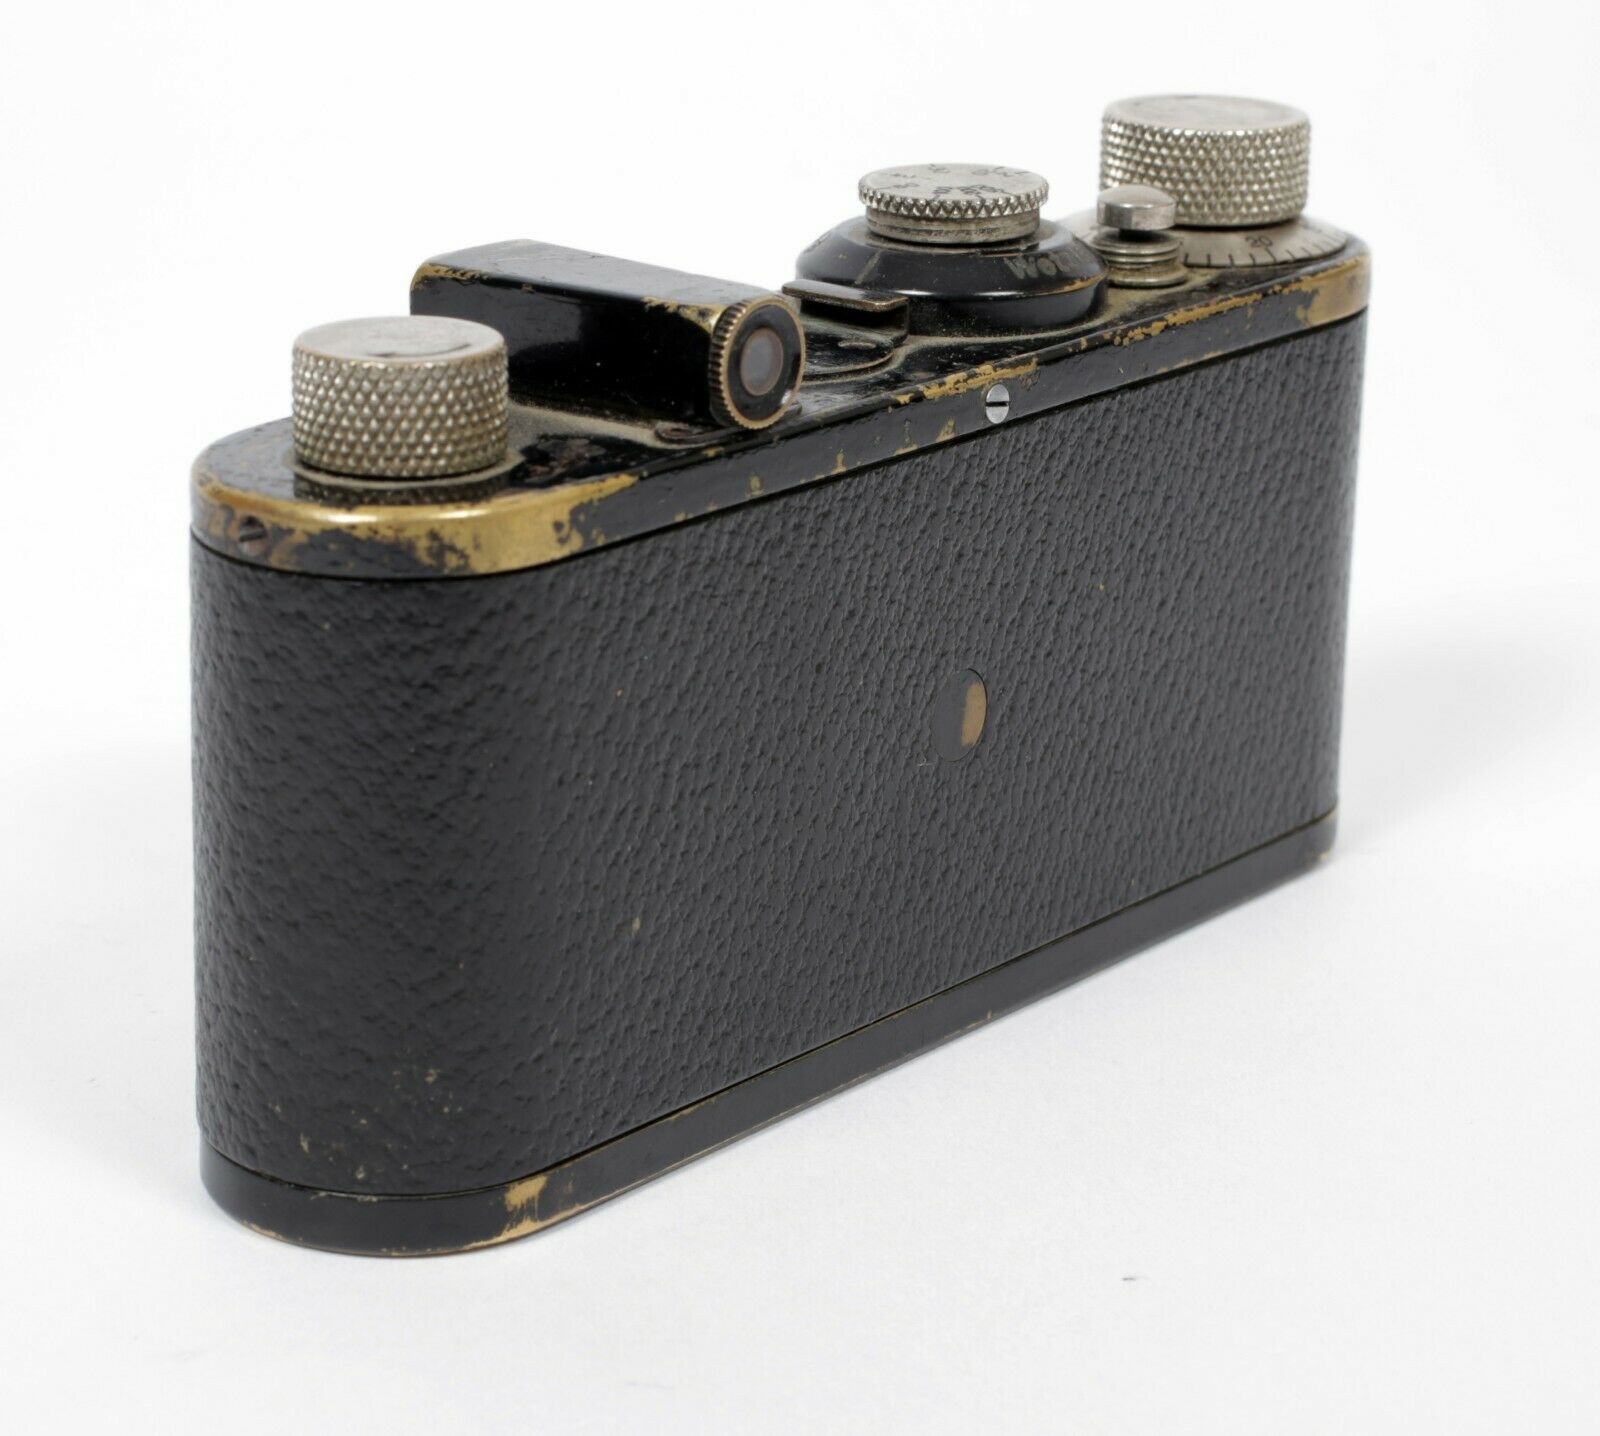 Leica IA 35mm Film Camera leitz rangefinder Elmar 50mm F3.5 lens